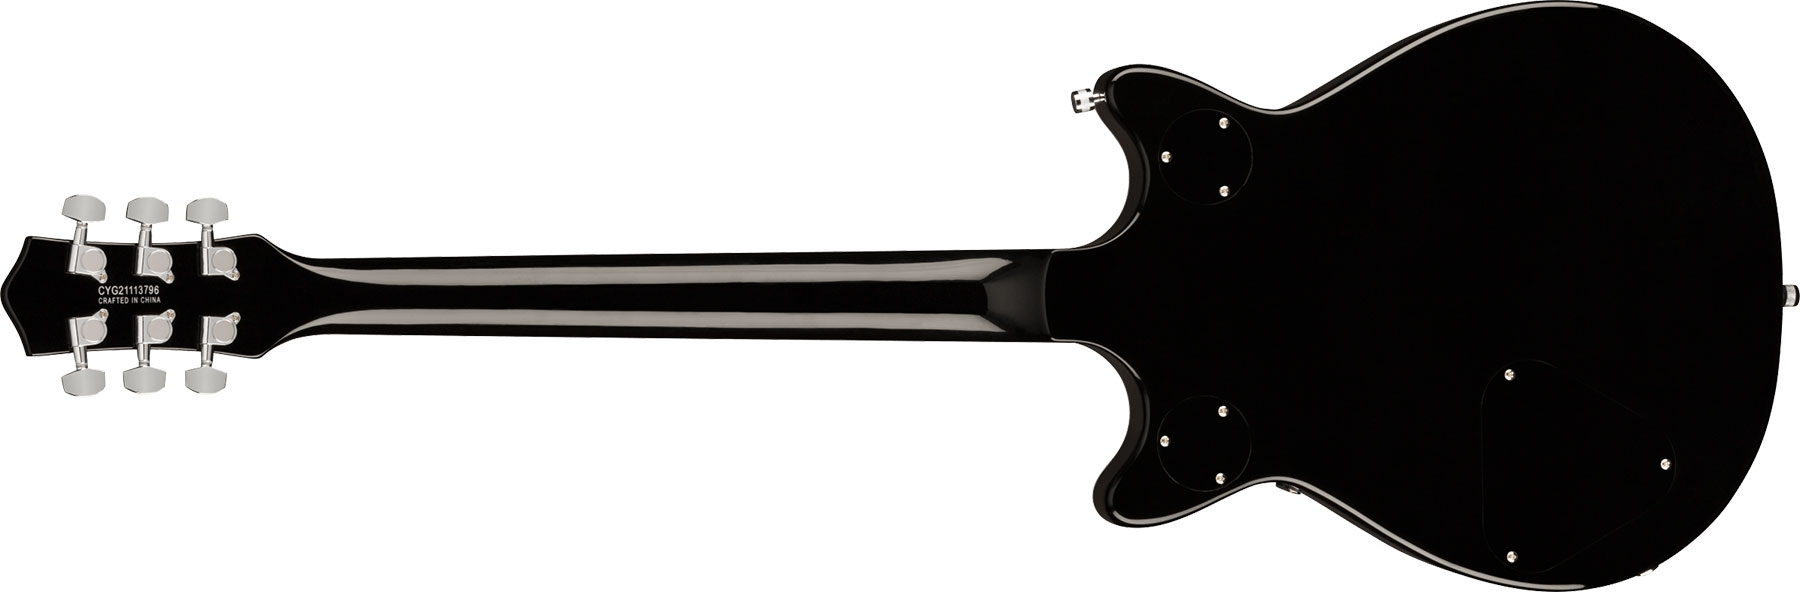 Gretsch G5222 Electromatic Double Jet Bt V-stoptail Hh Ht Lau - Black - Double Cut E-Gitarre - Variation 1